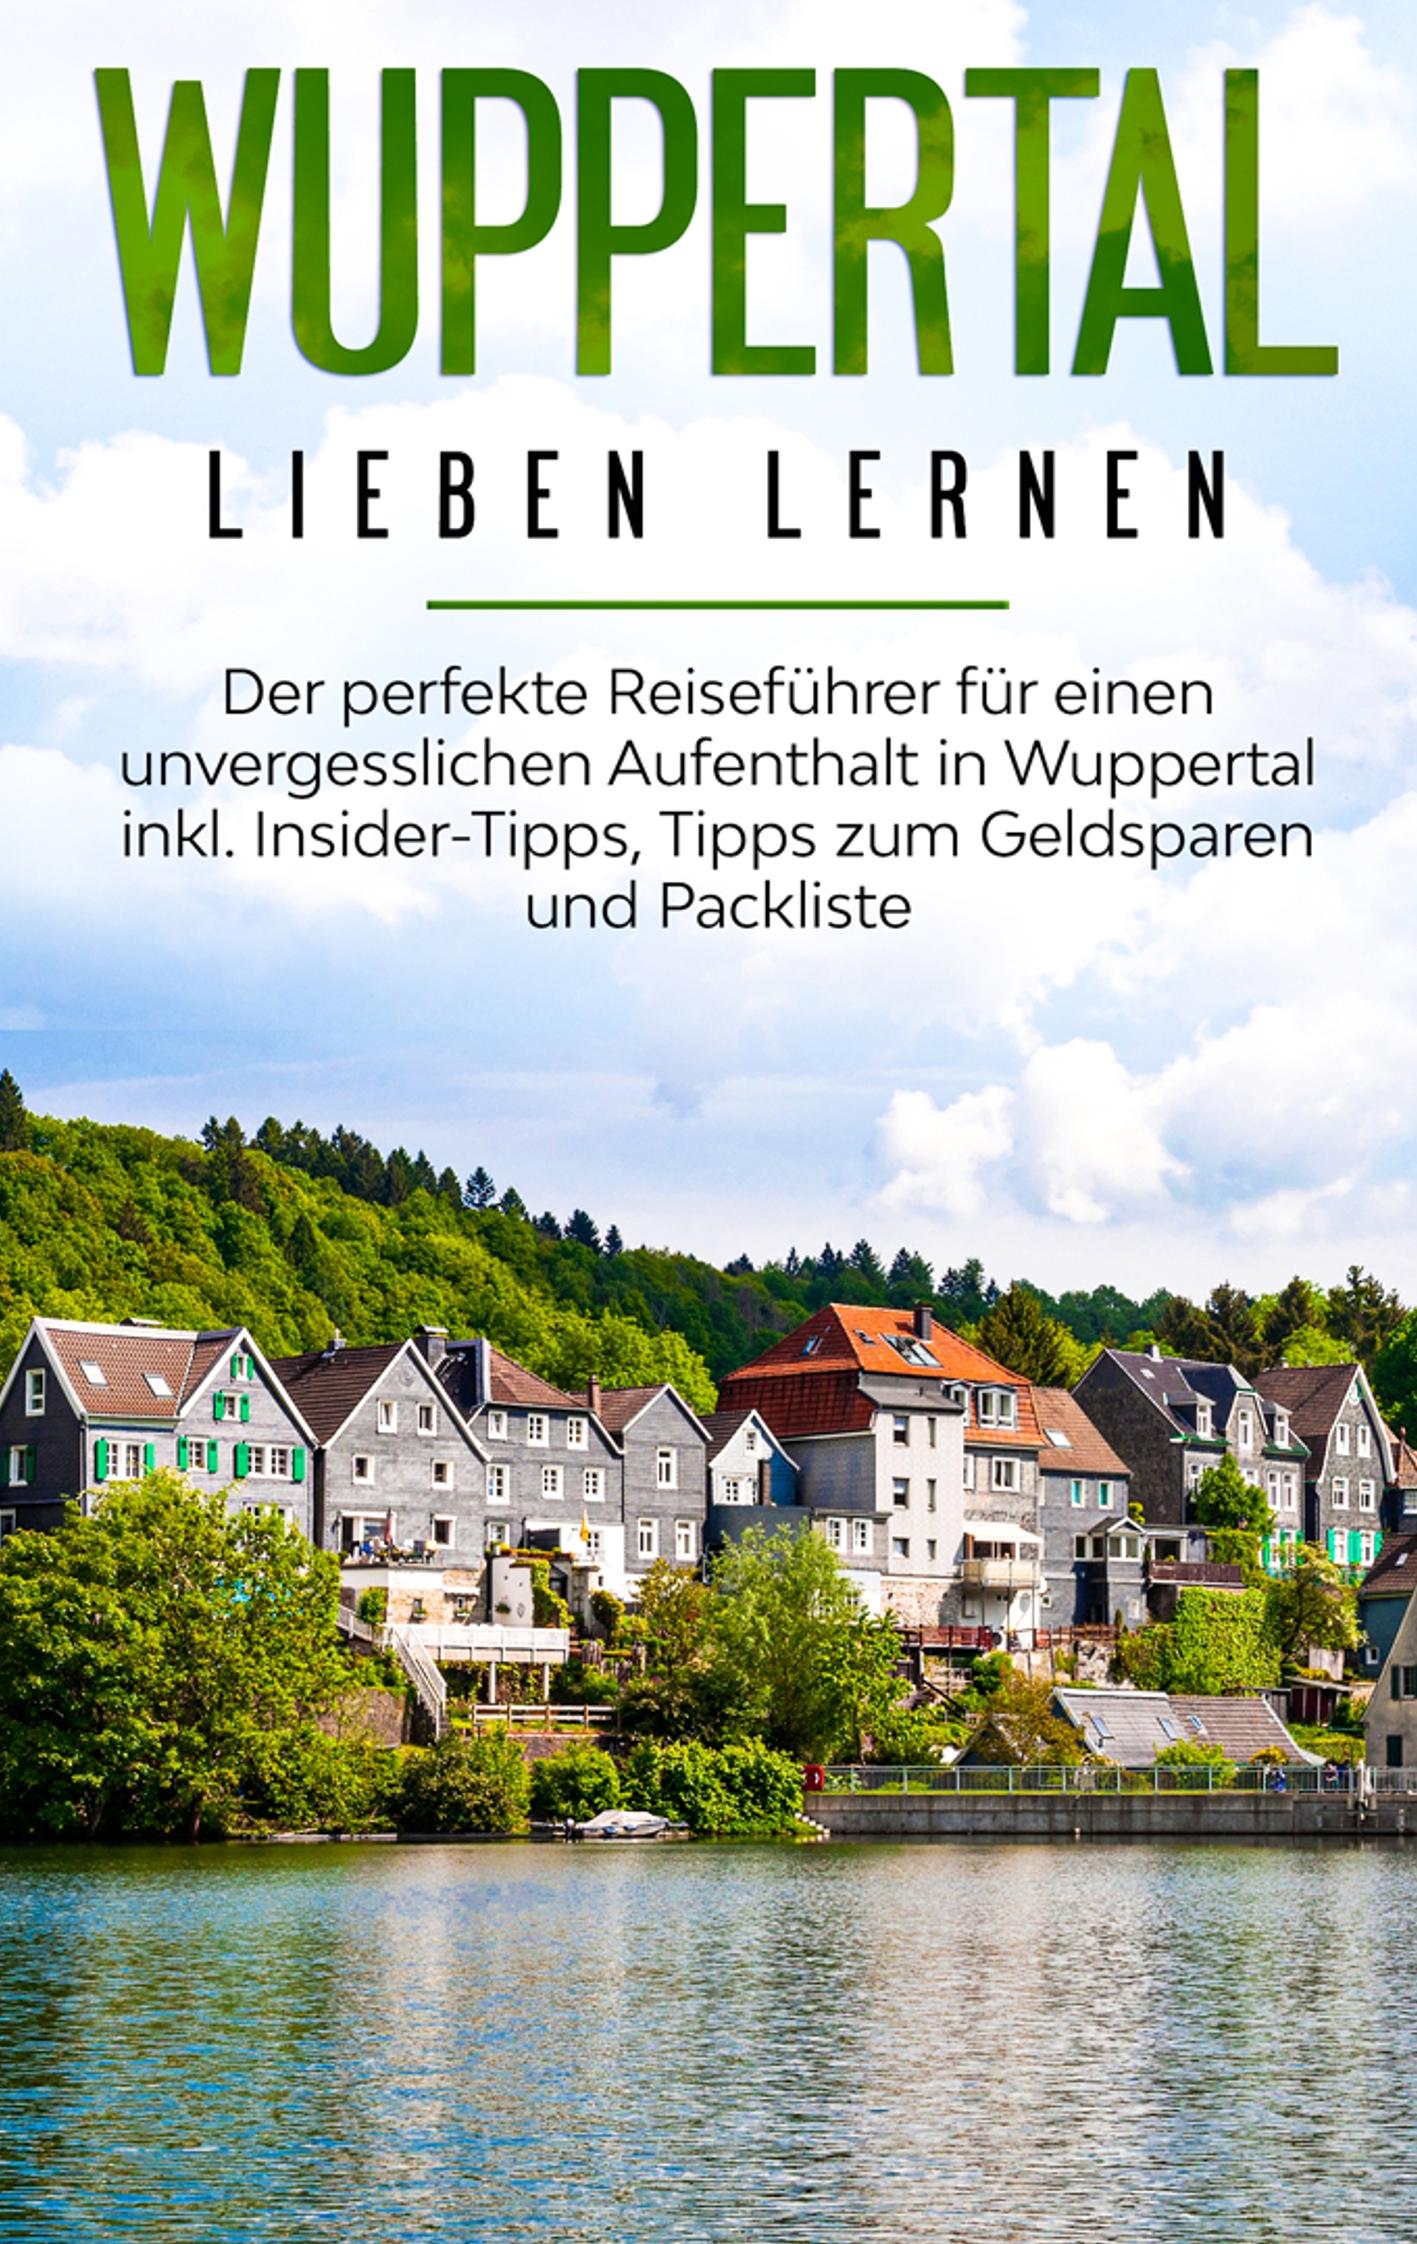 Wuppertal lieben lernen: Der perfekte Reiseführer für einen unvergesslichen Aufenthalt in Wuppertal inkl. Insider-Tipps, Tipps zum Geldsparen und Packliste